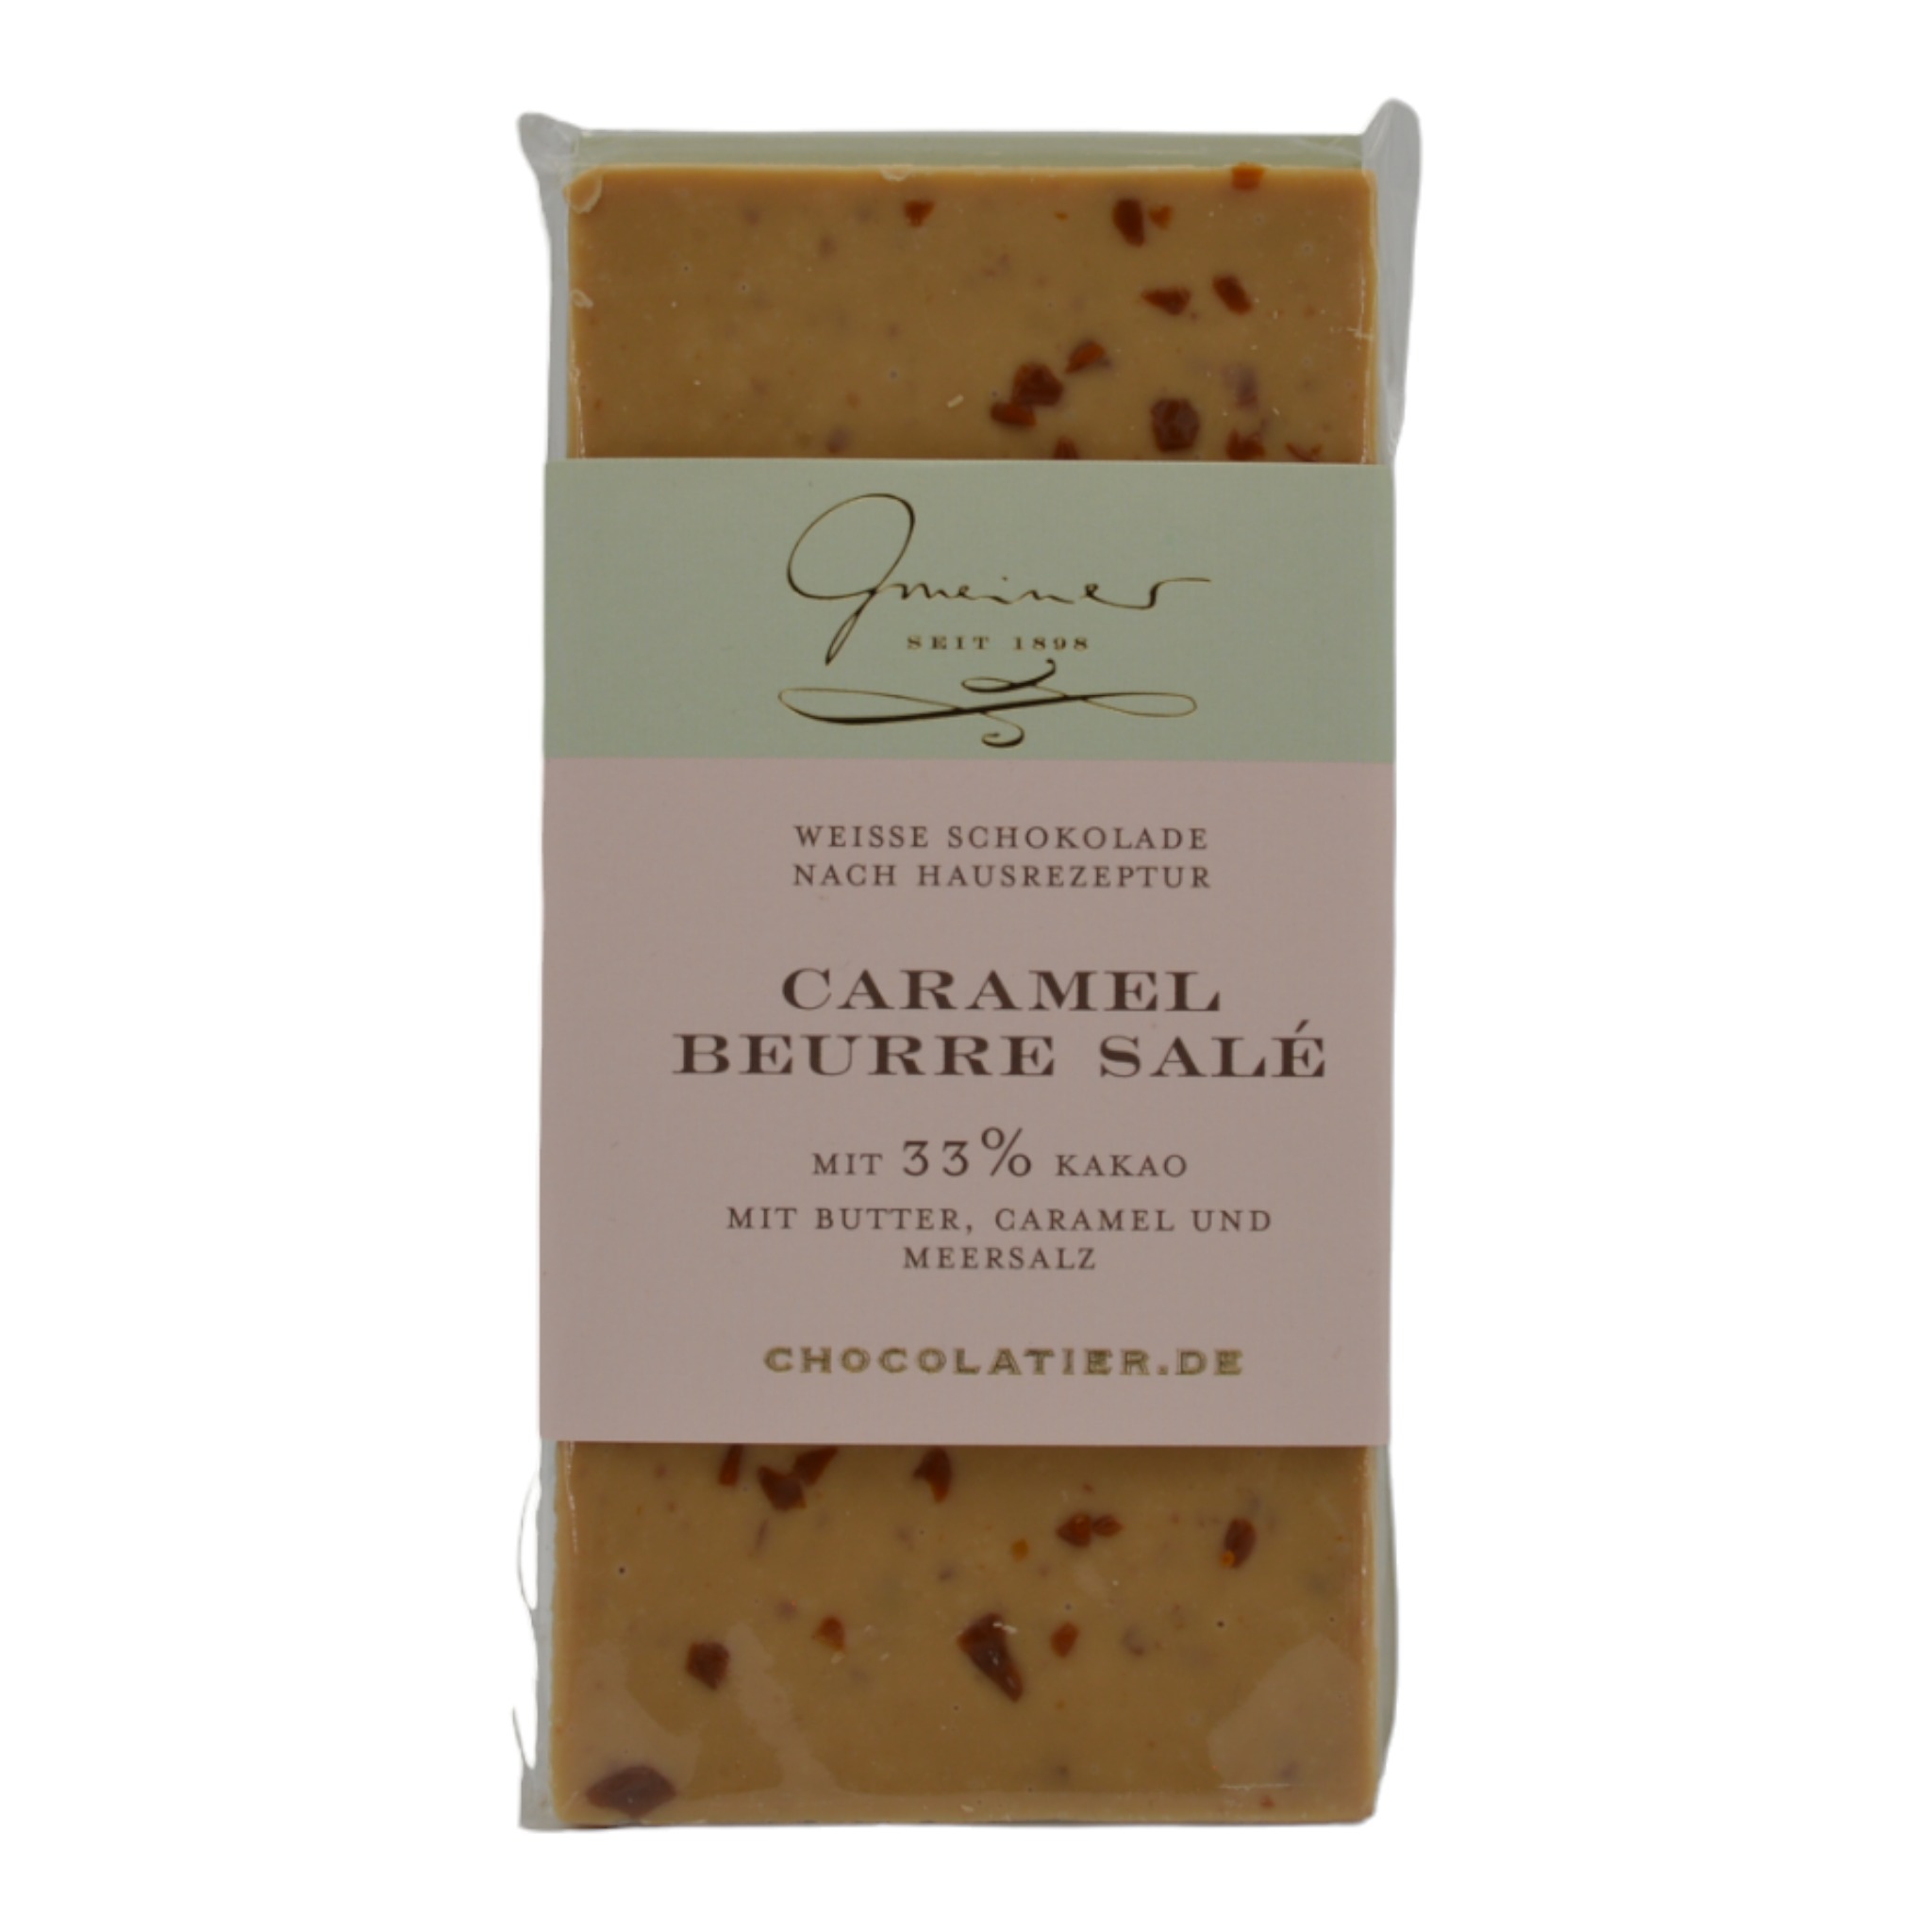 4260164218819Gmeiner Caramel Beurre Sale mit 33 Kakao f